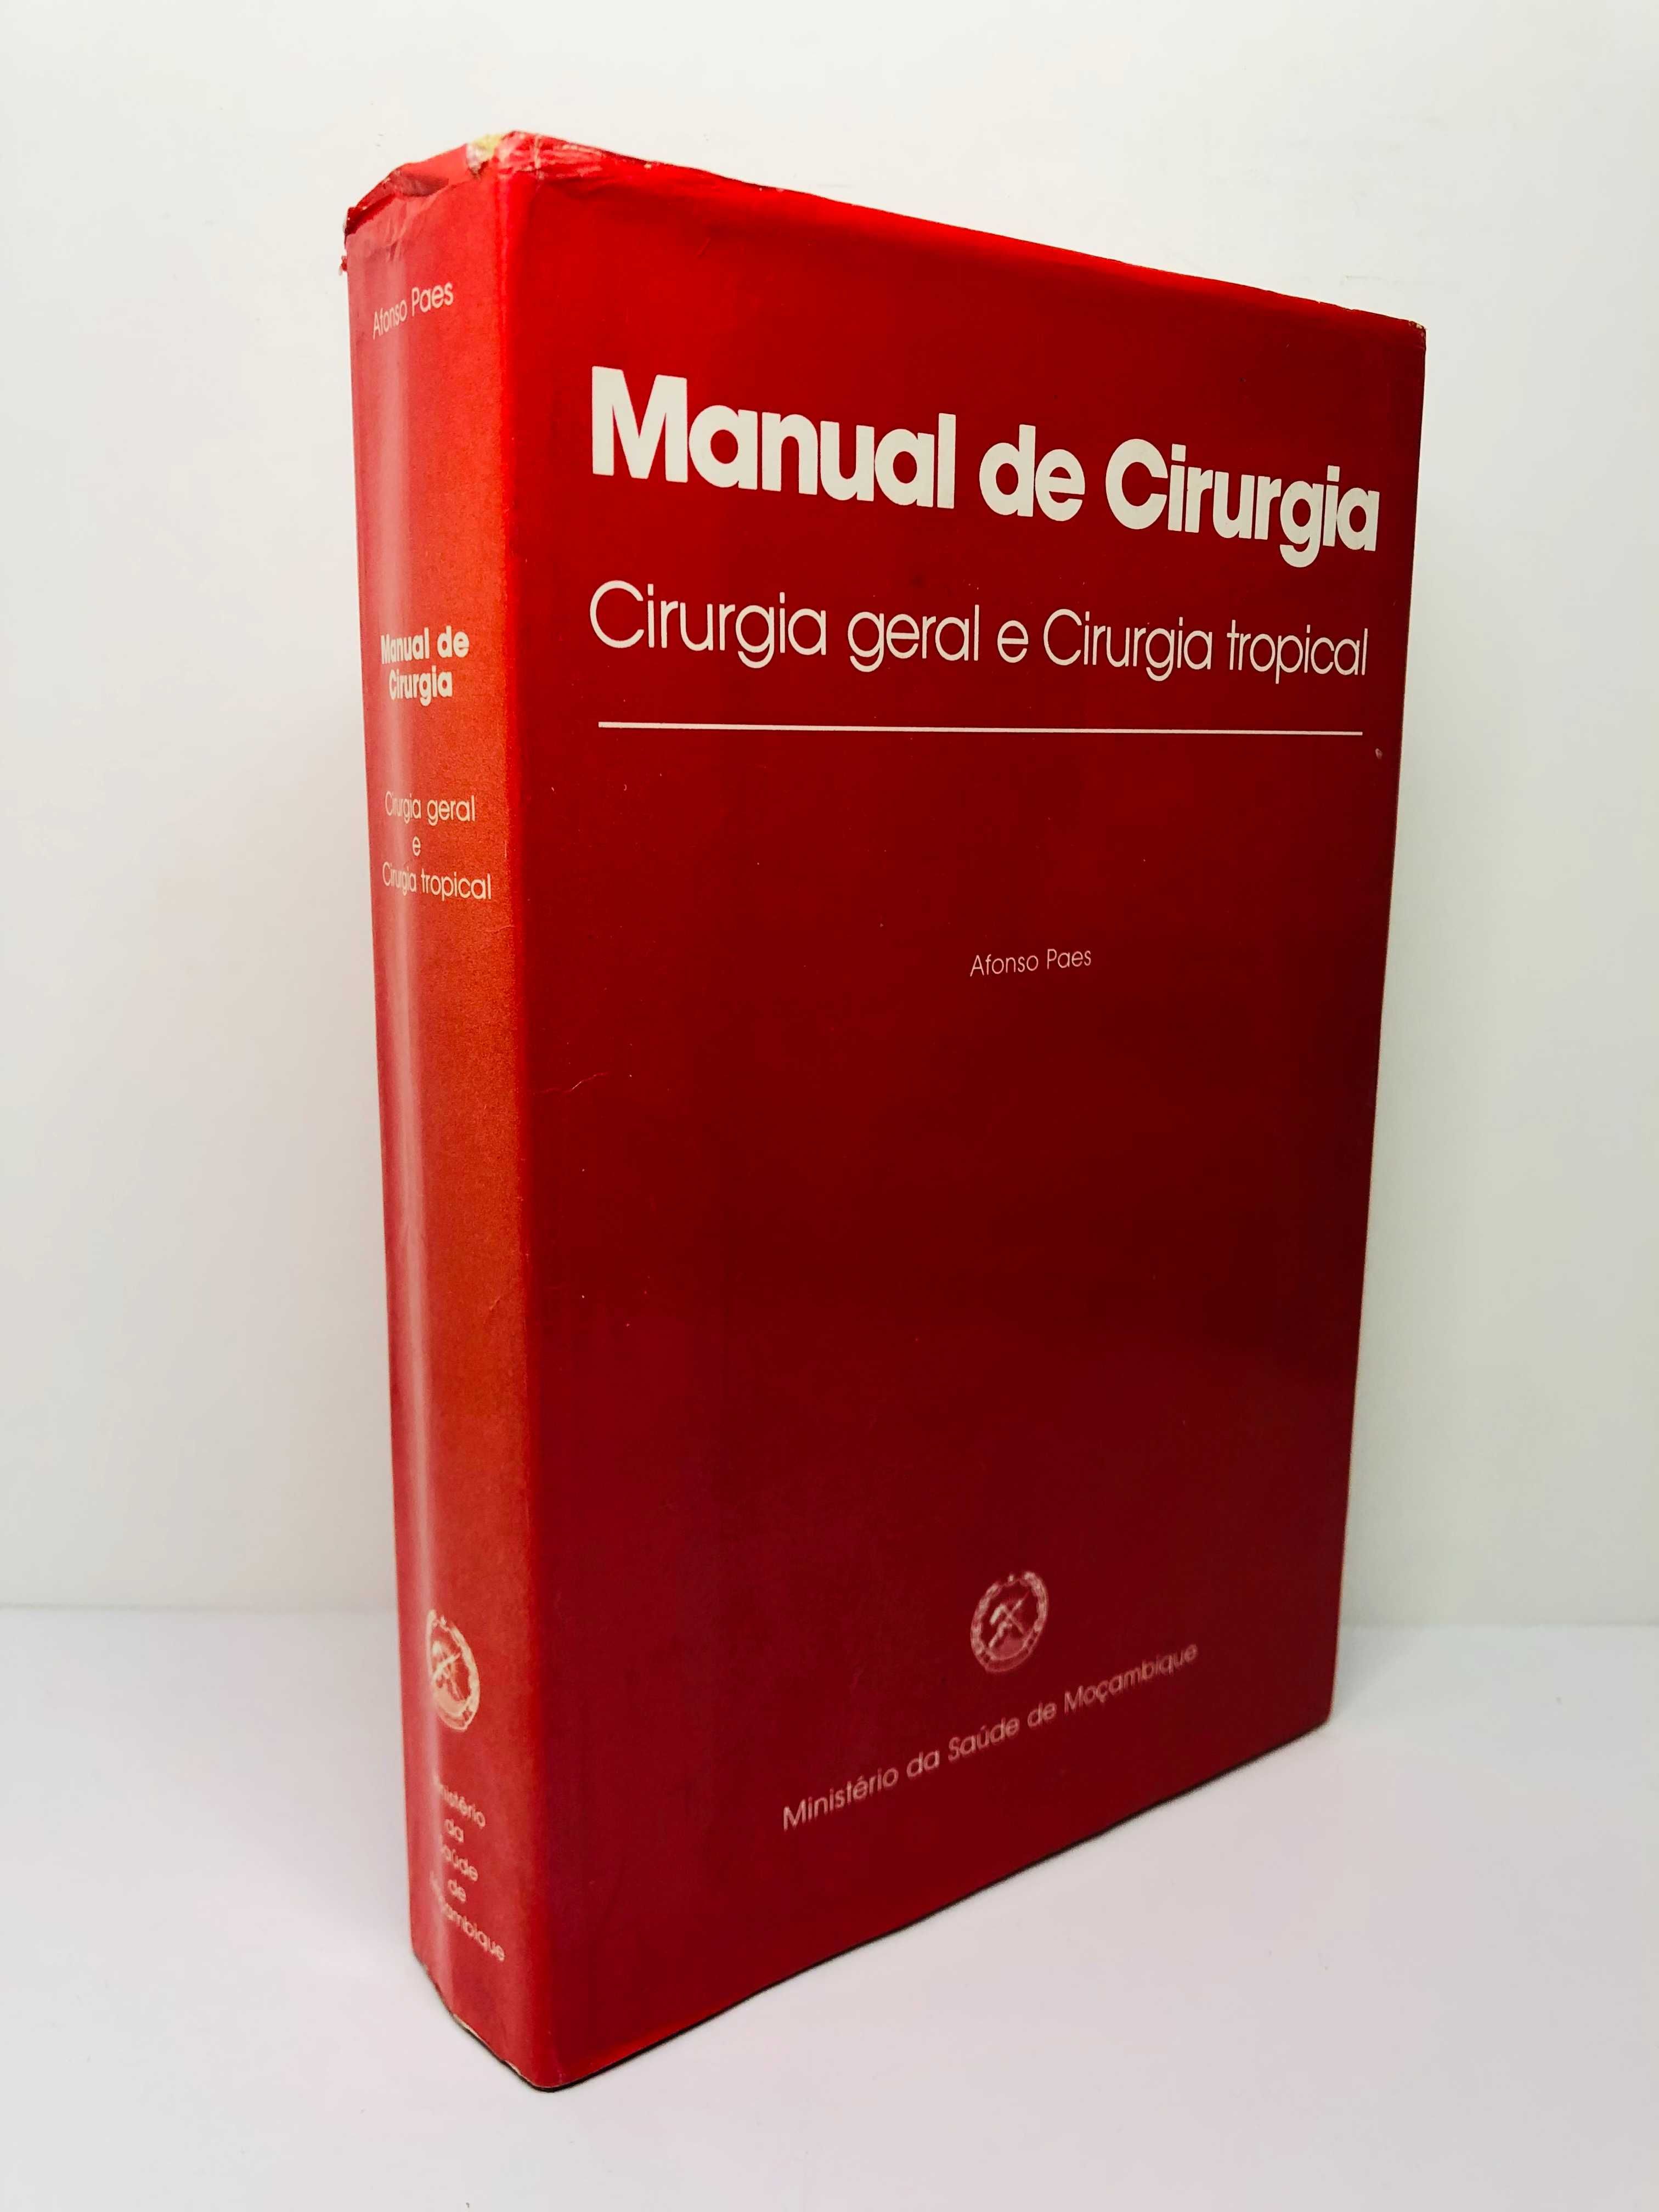 Manual de Cirurgia (Cirurgia Geral e Cirurgia Tropical) - Afonso Paes